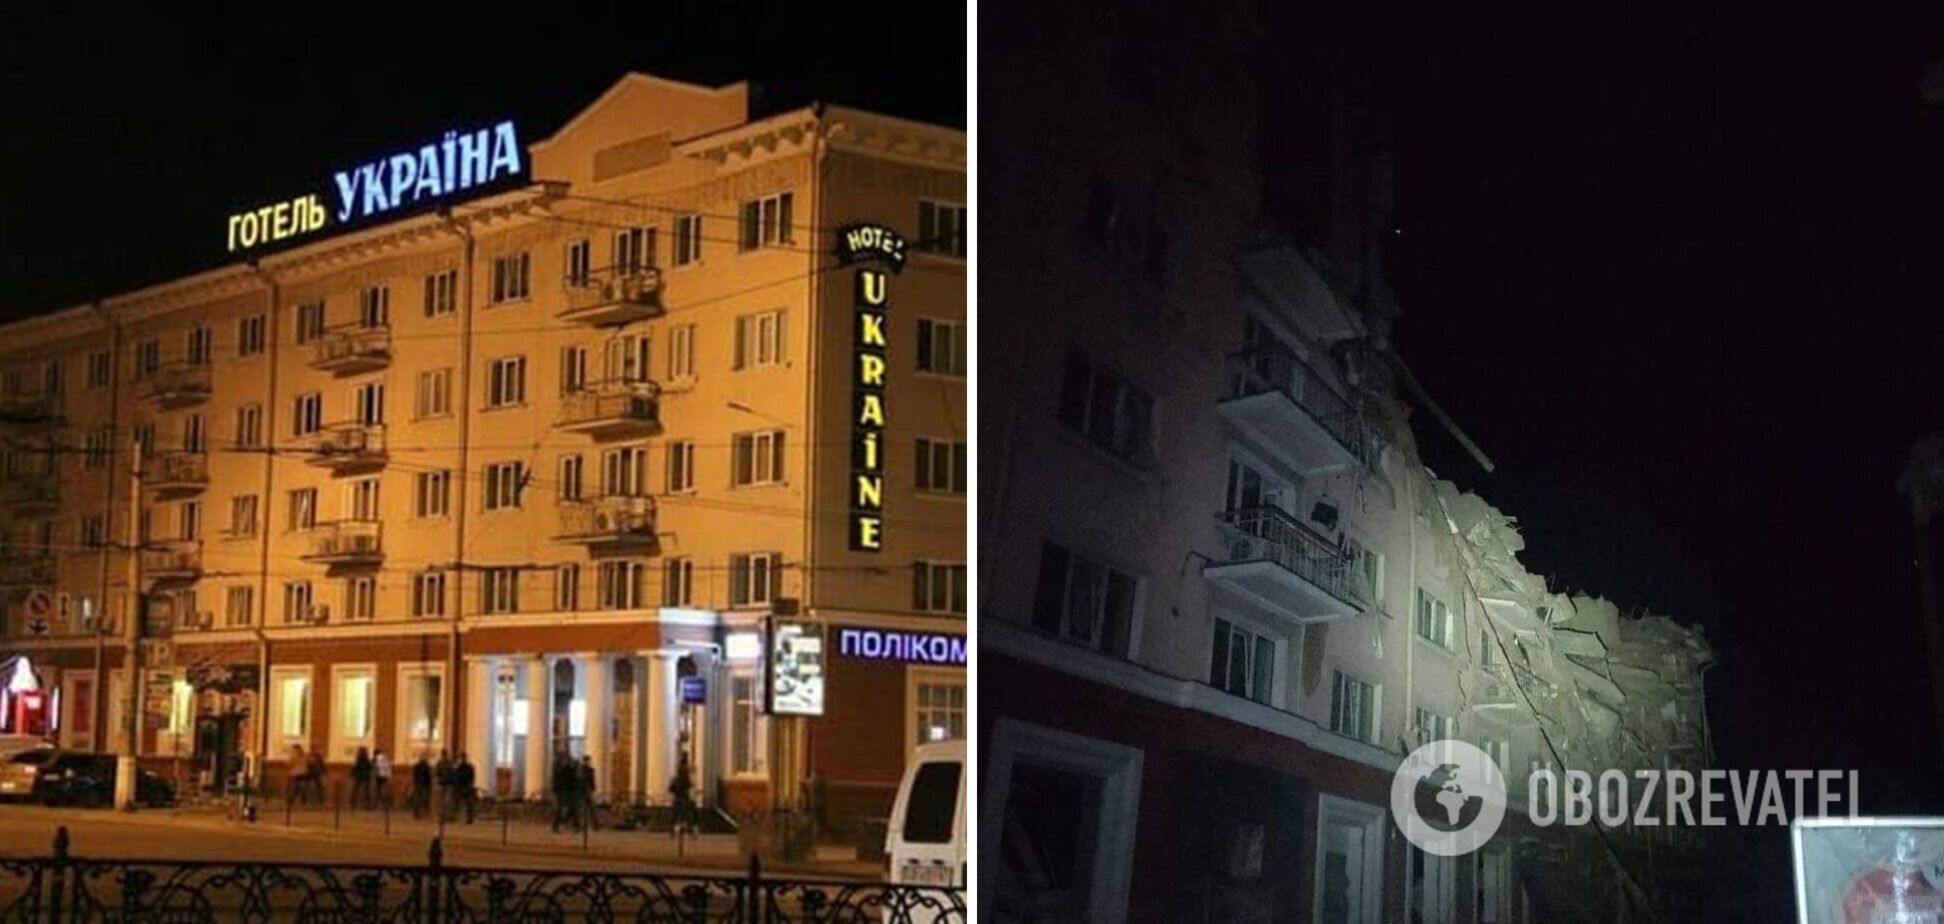 Оккупанты разбомбили в Чернигове отель 'Украина': он был одной из визитных карточек города. Фото